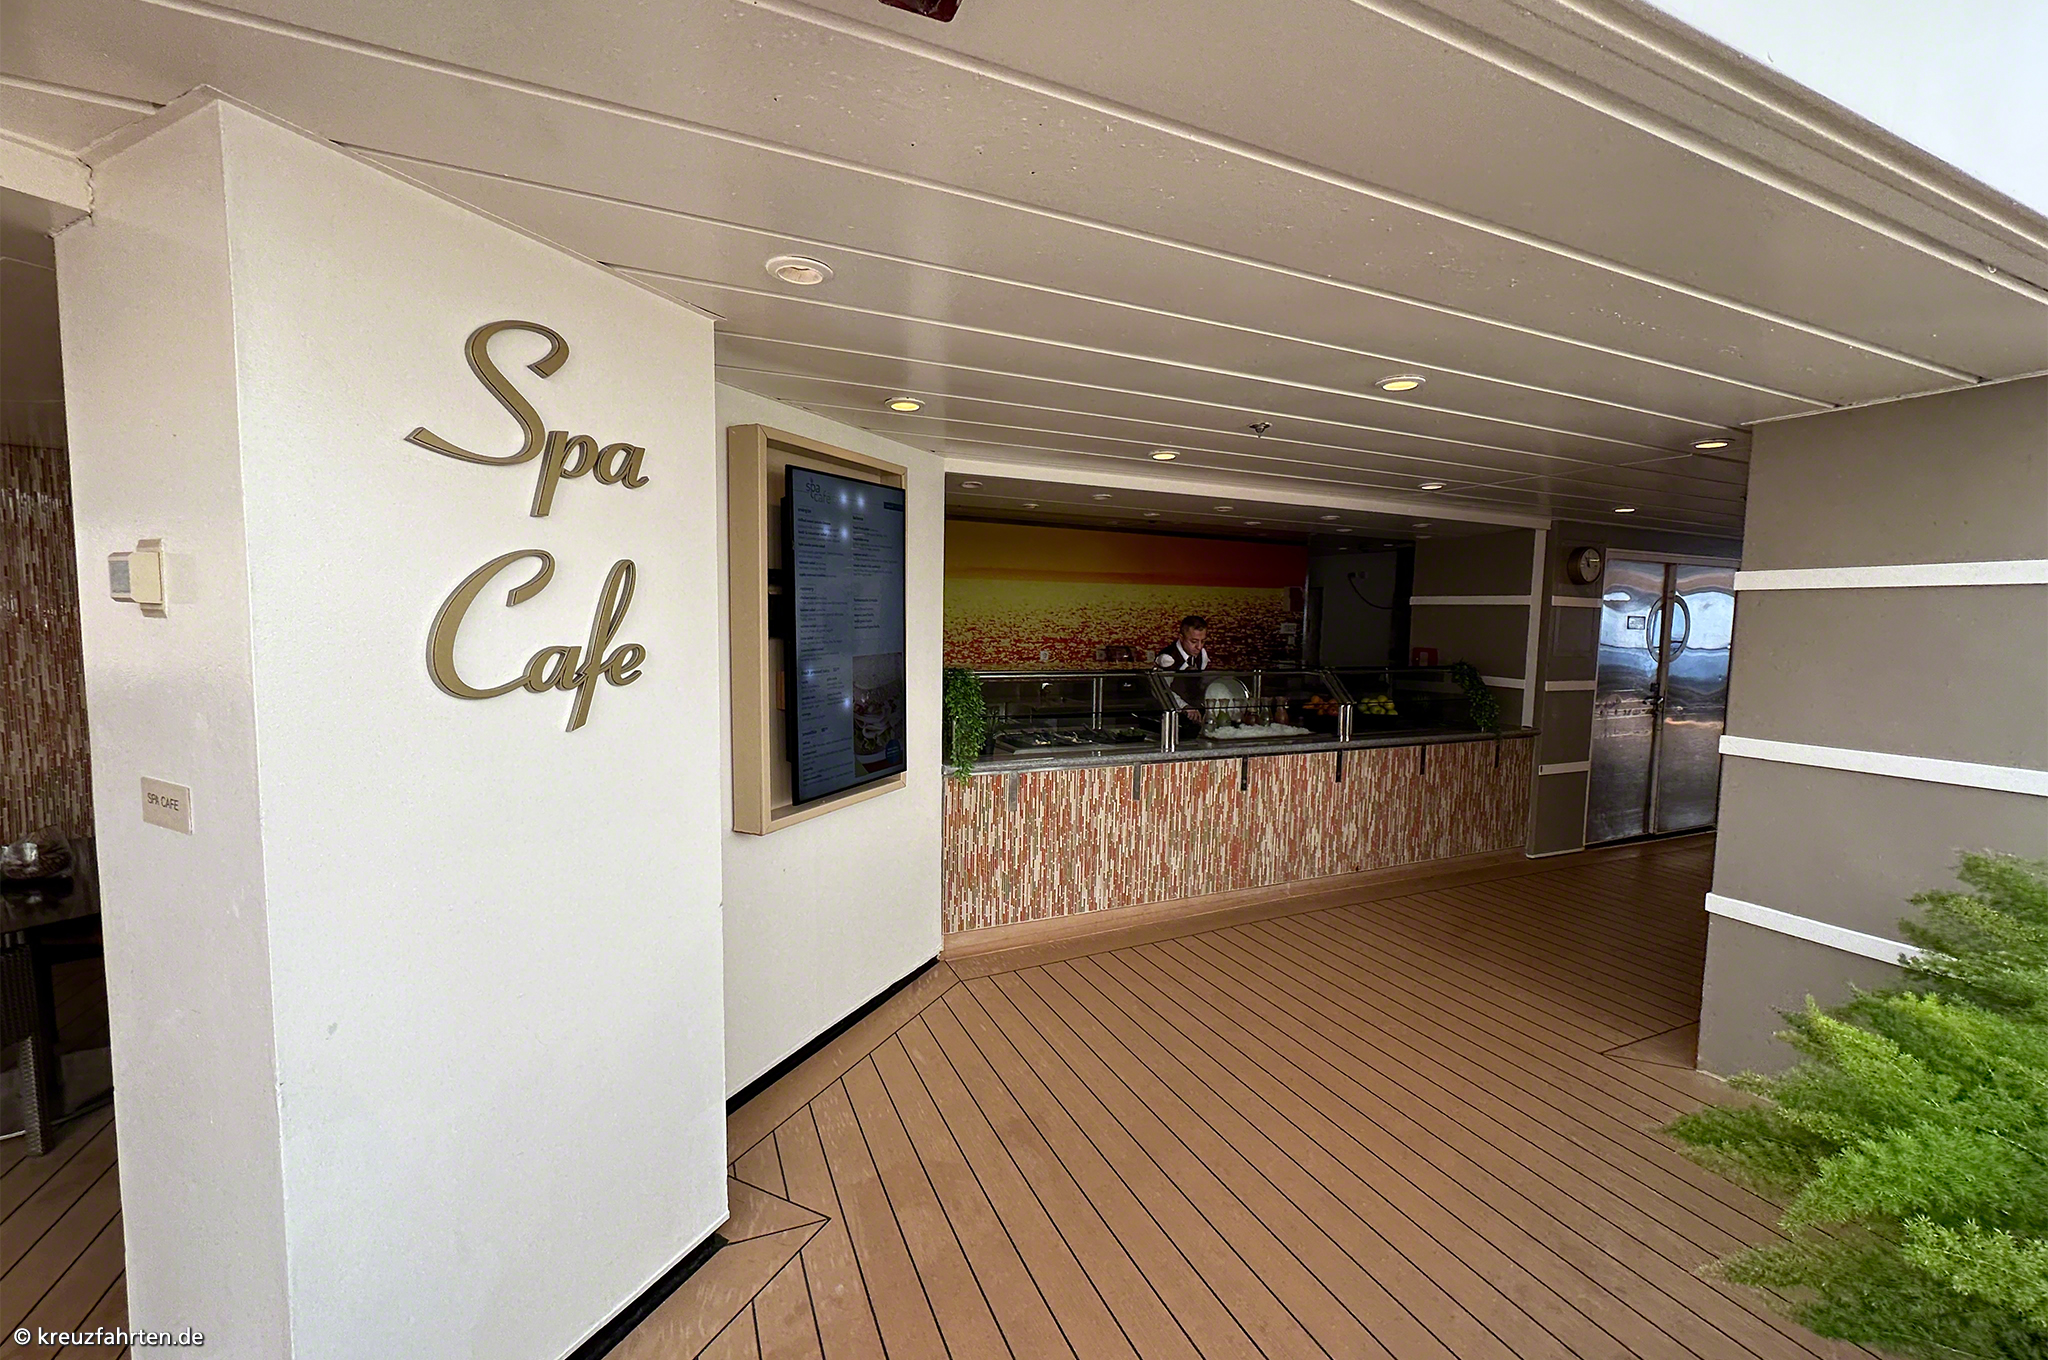 Spa Cafe